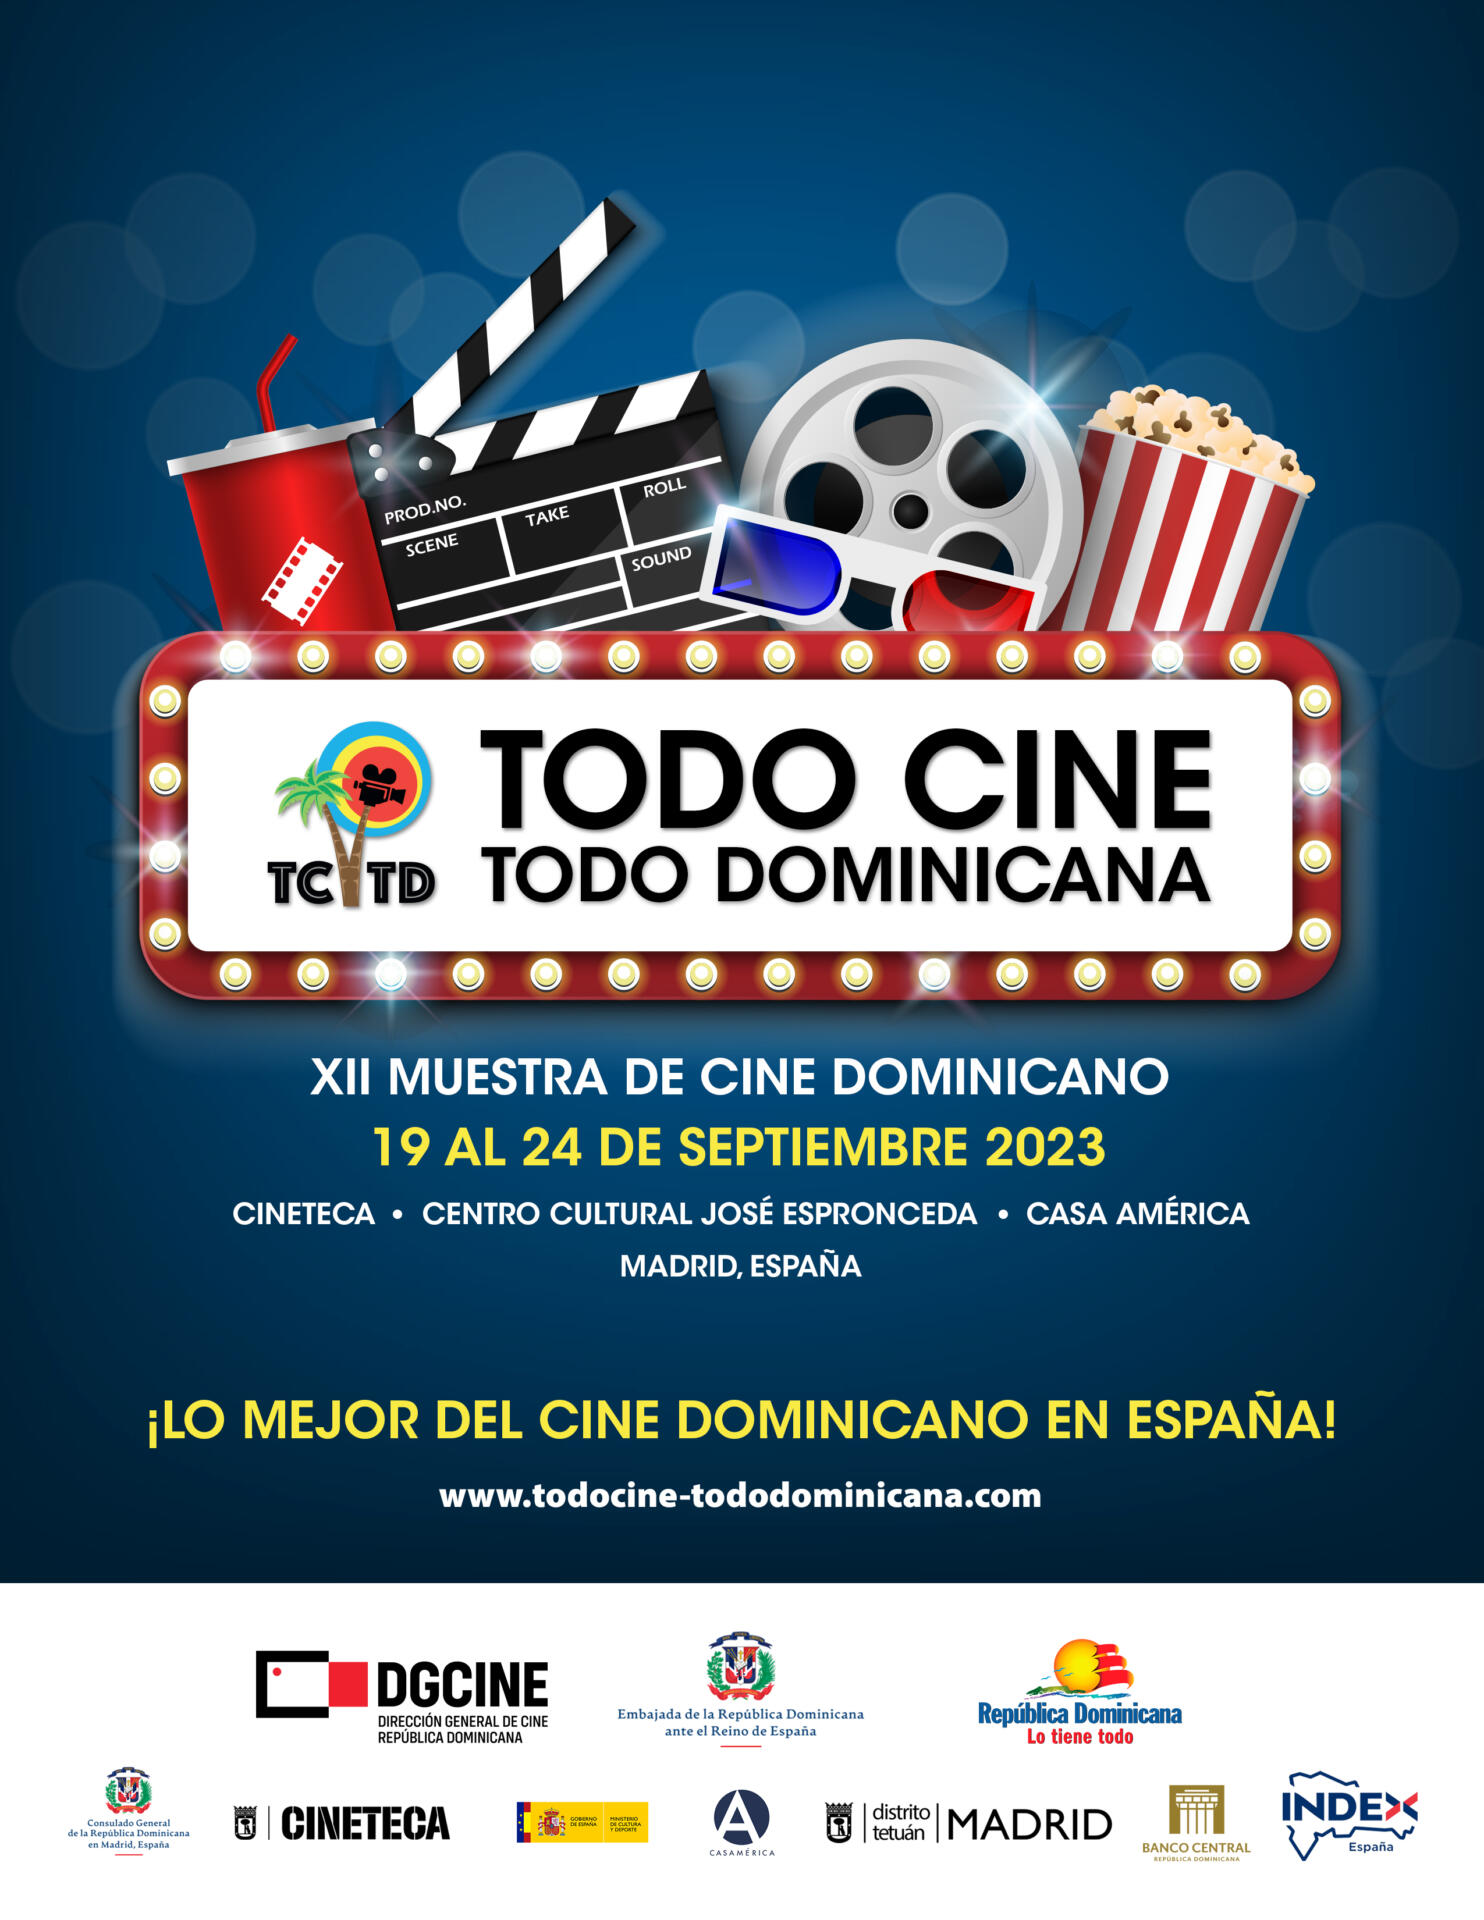 Todo Cine Todo Dominicana 2023 regresa a Madrid